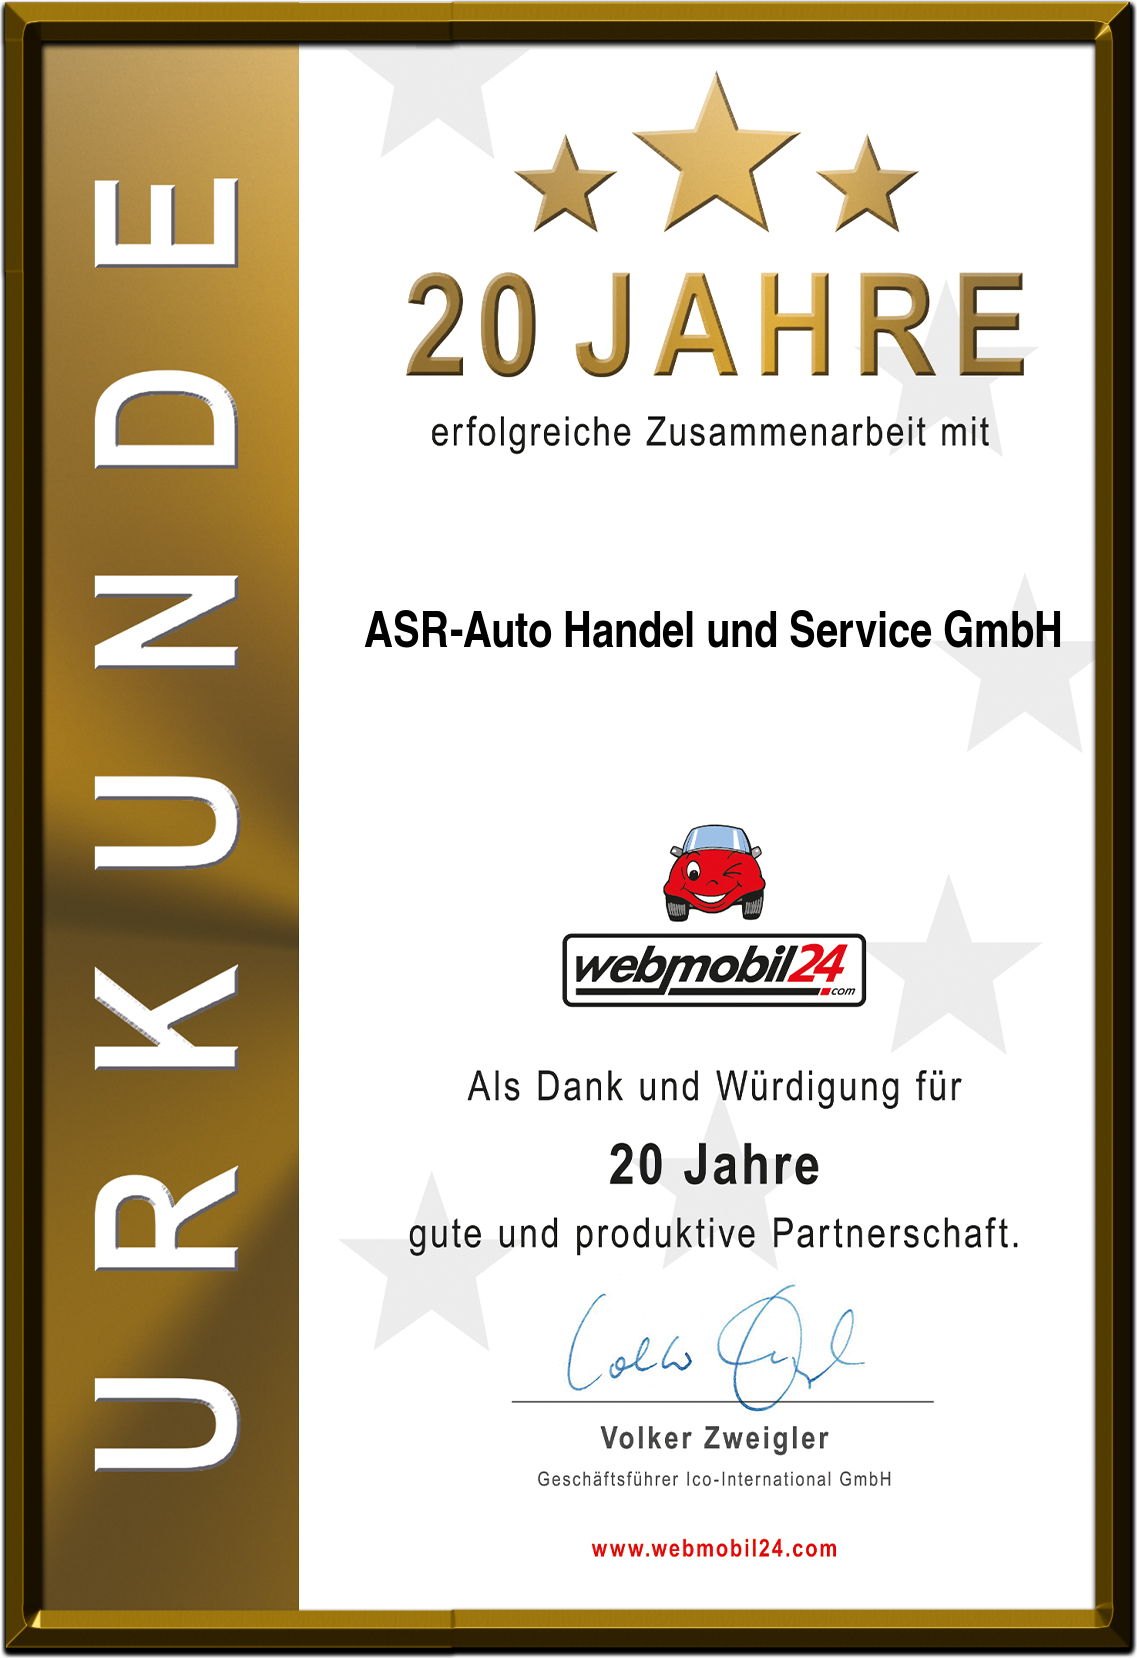 ASR-Auto Handel und Service GmbH